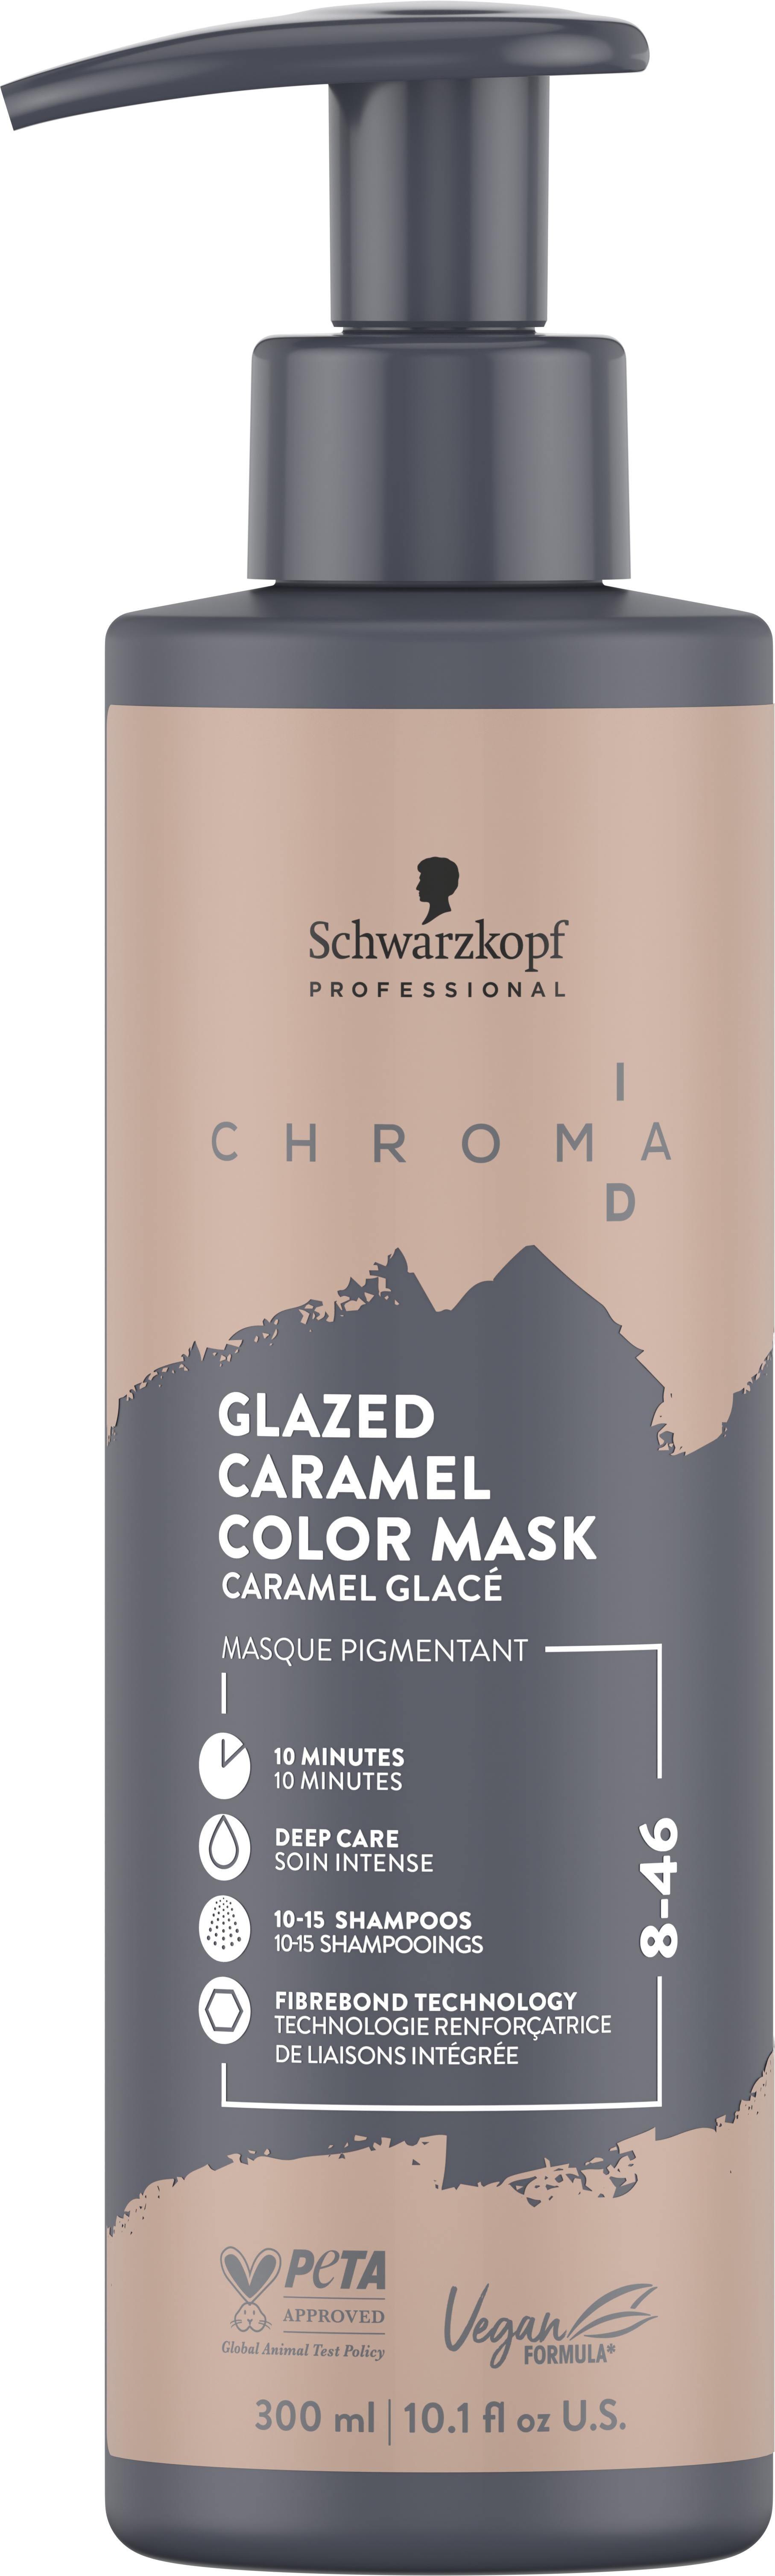 Chroma ID - Bonding Color Mask 8-46 Glazed Caramel